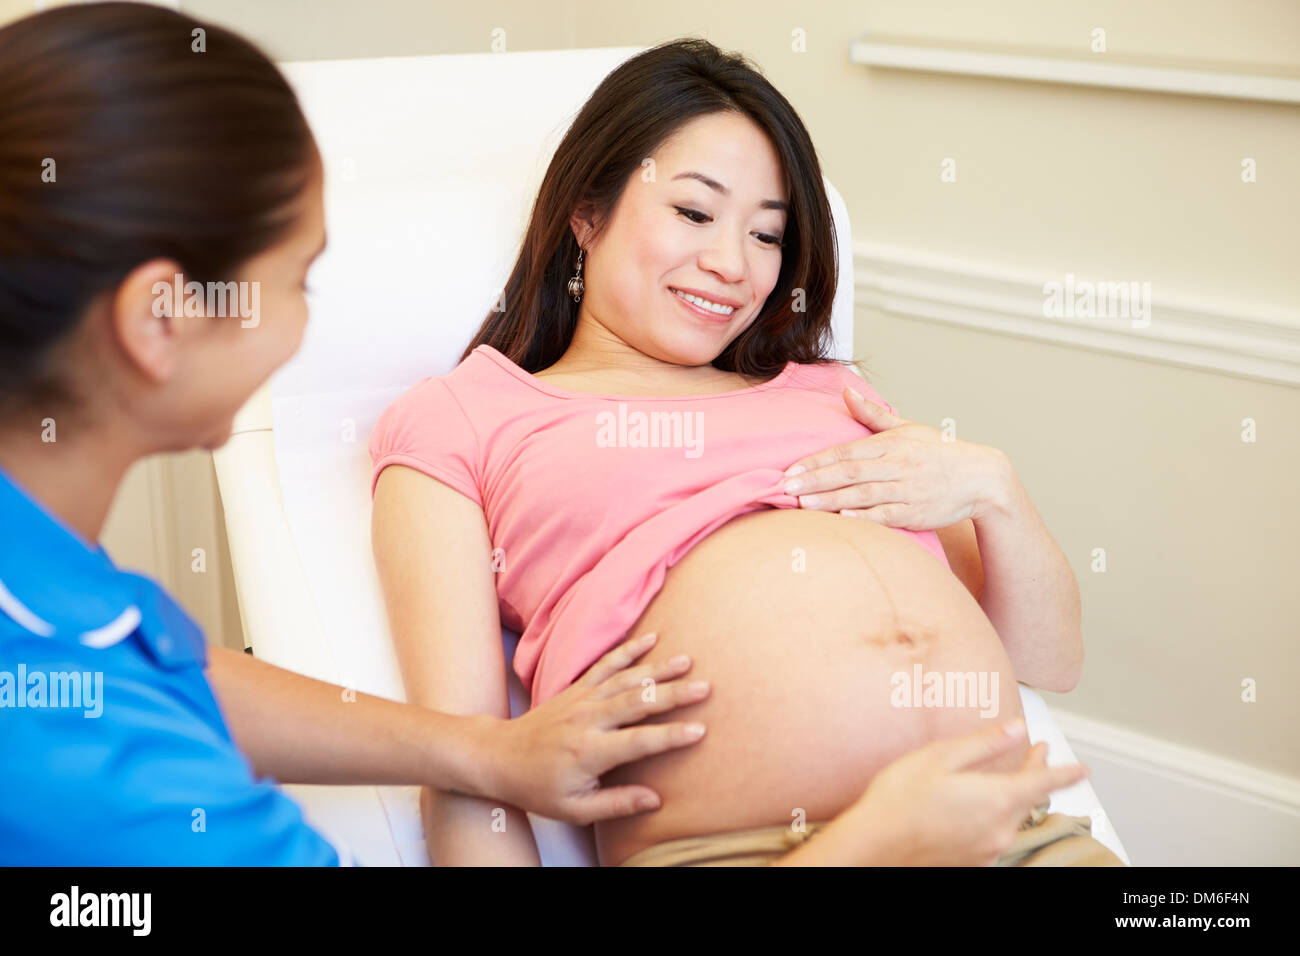 Schwangere Frau Ante Natal Check von Krankenschwester gegeben werden Stockfoto